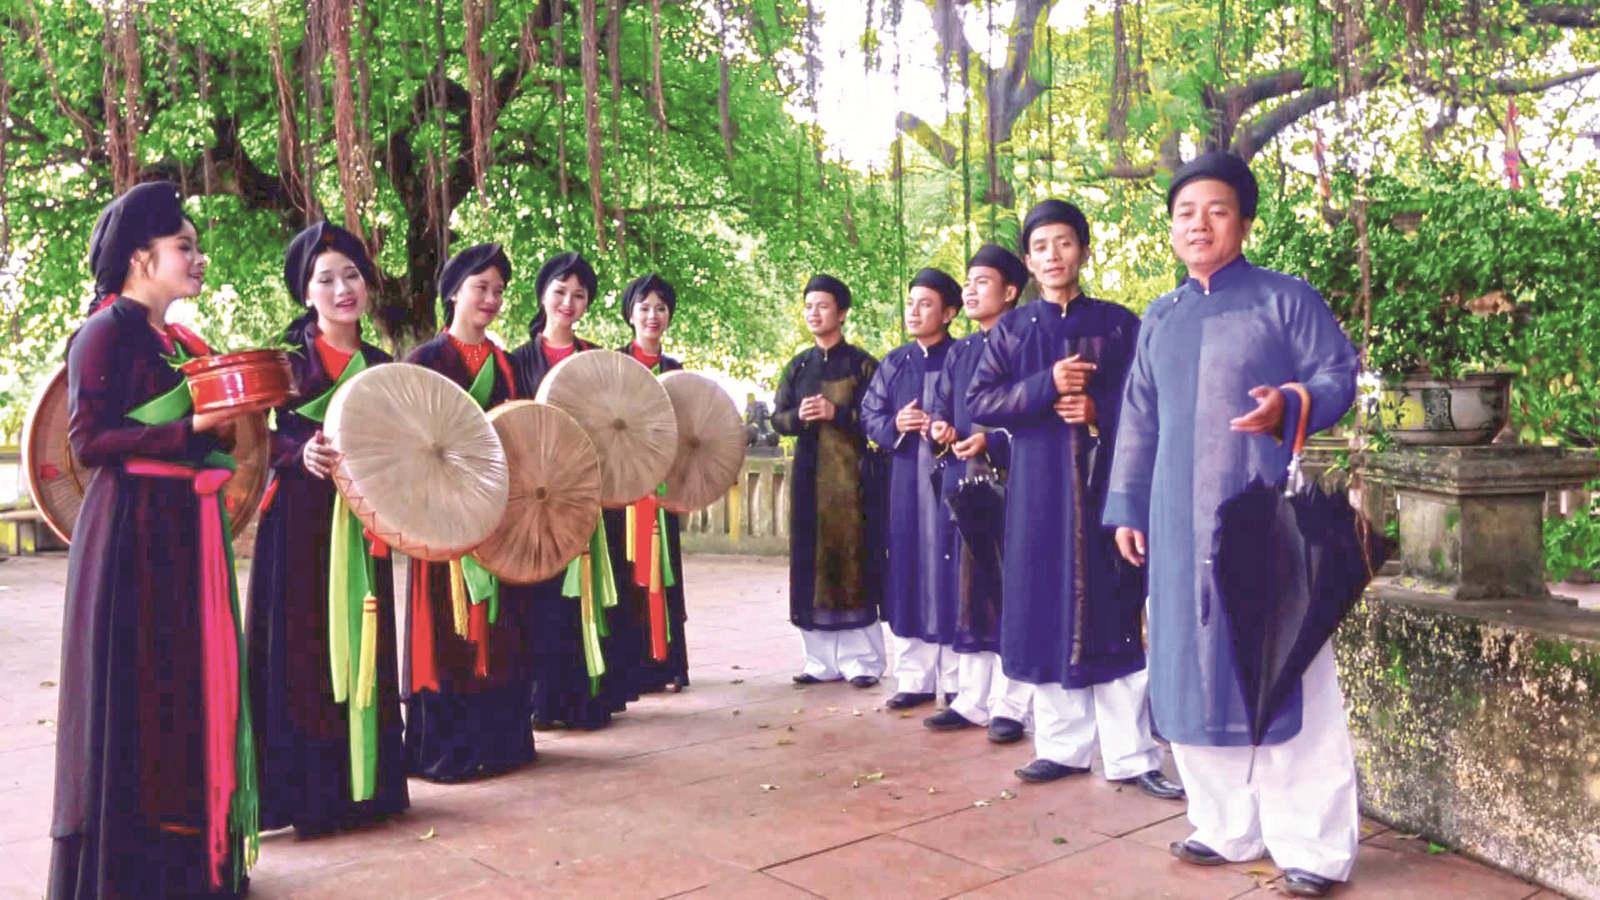 Hãy xem hình ảnh về Bảo tồn, phát huy di sản văn hóa phi vật thể Dân ca Quan họ Bắc Ninh để cảm nhận được nét đẹp và ý nghĩa sâu sắc của dòng nhạc truyền thống này. Đây là hành trình bảo tồn và phát huy giá trị di sản văn hóa của dân tộc.